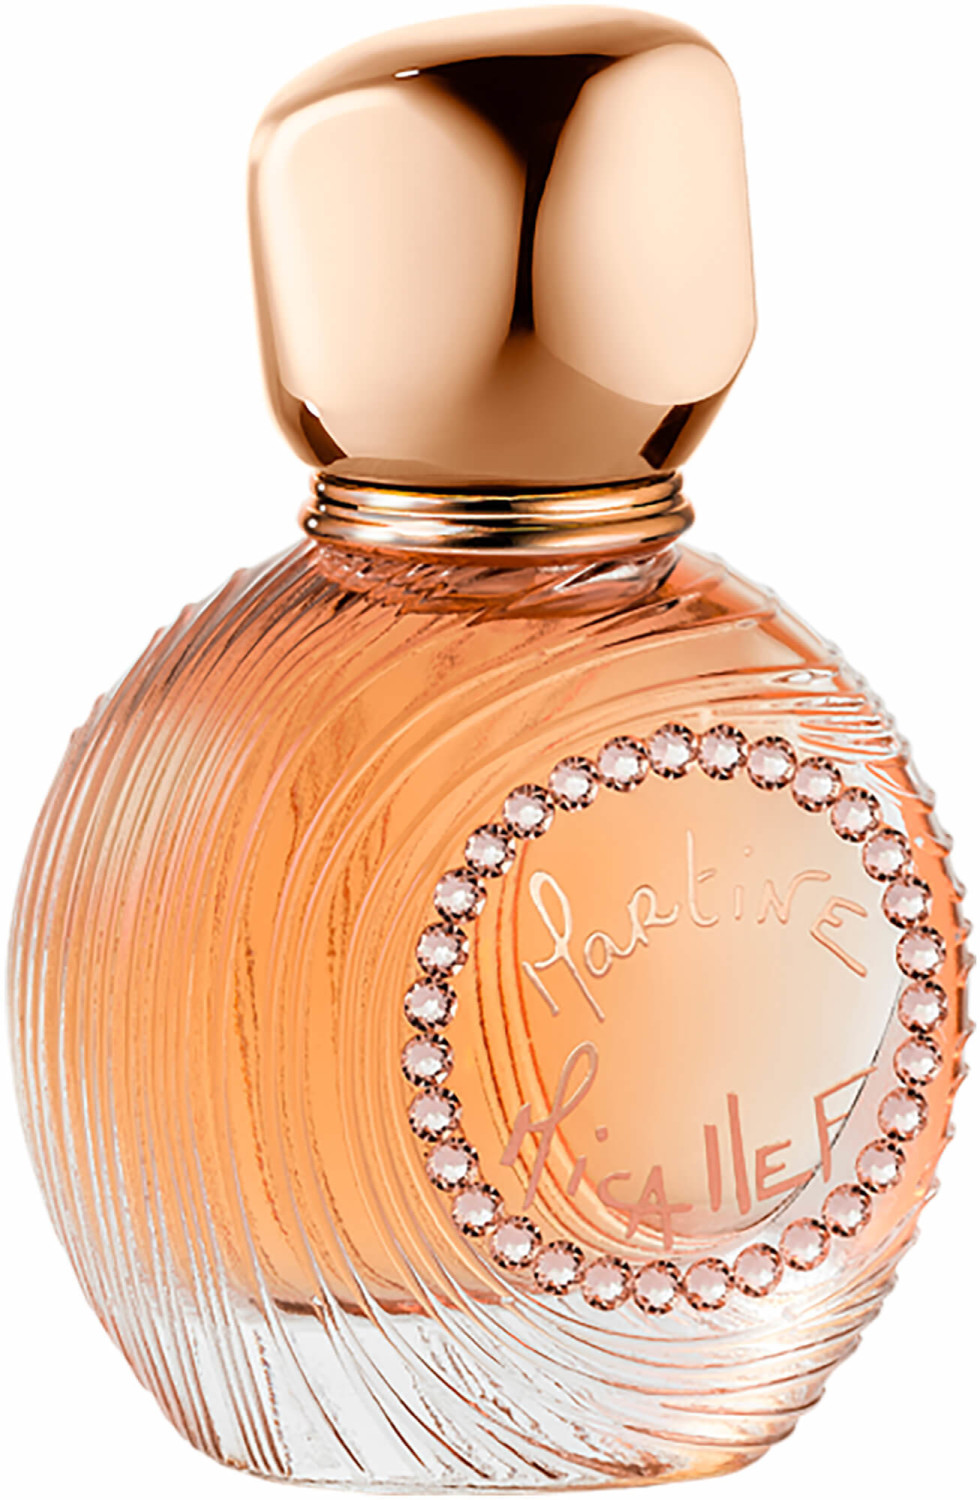 Photos - Women's Fragrance M. Micallef Mon Parfum Cristal Eau de Parfum  (30ml)